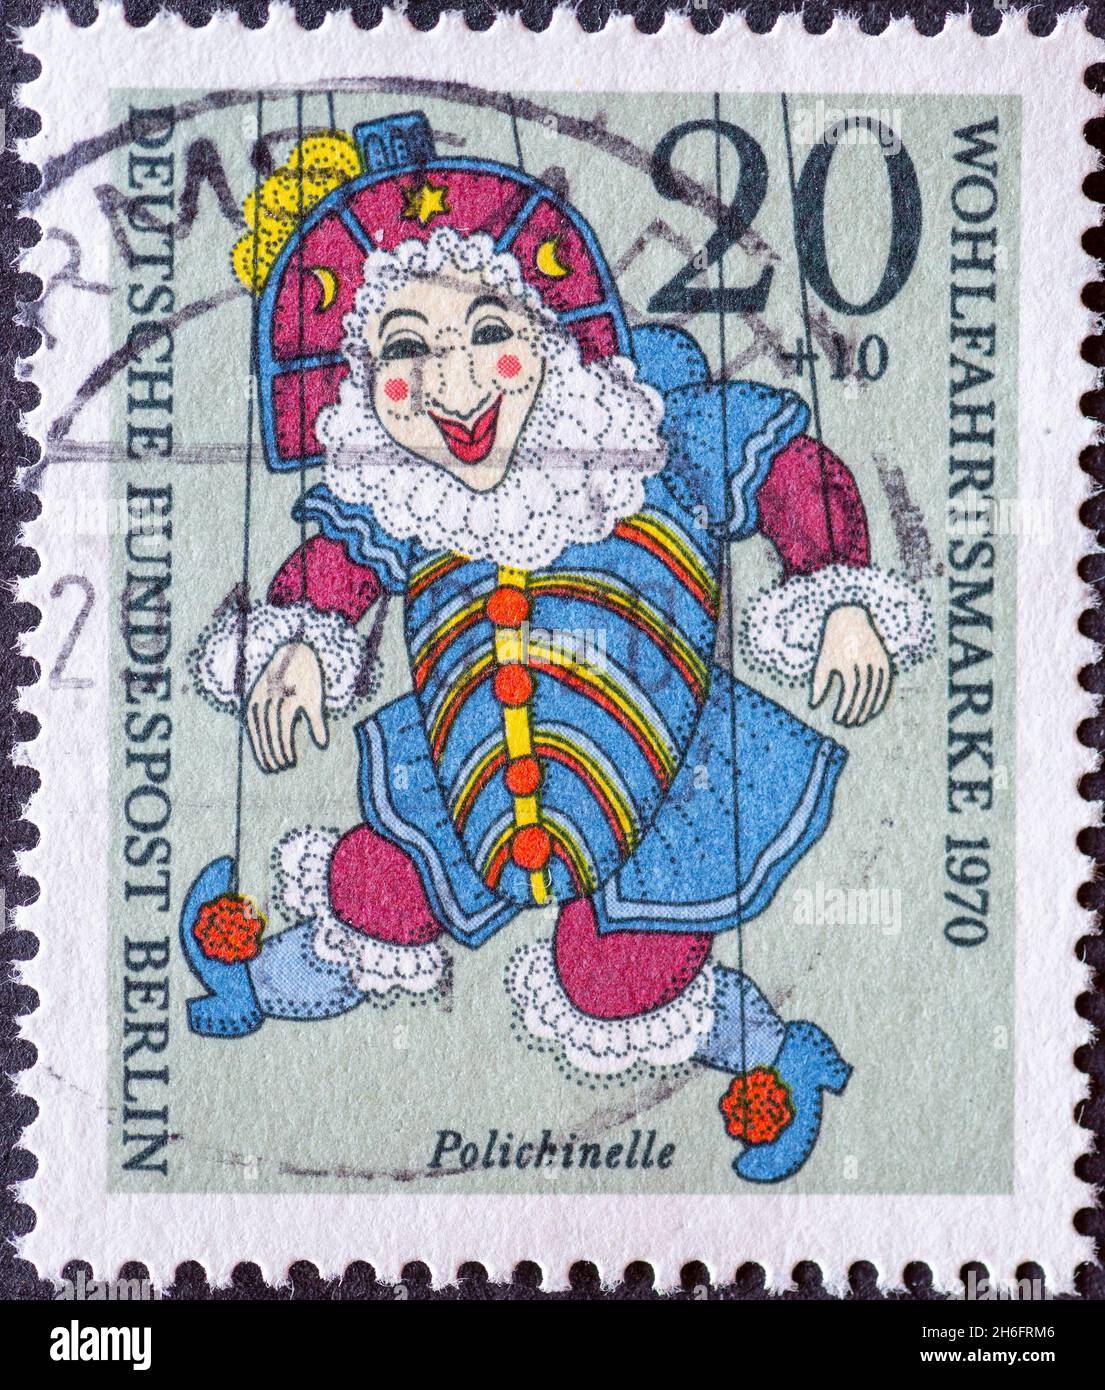 ALLEMAGNE, Berlin - VERS 1970: Timbre-poste de l'Allemagne, Berlin montrant un timbre-poste de charité de 1970 avec marionnette historique.Ici : Polichinelle Banque D'Images